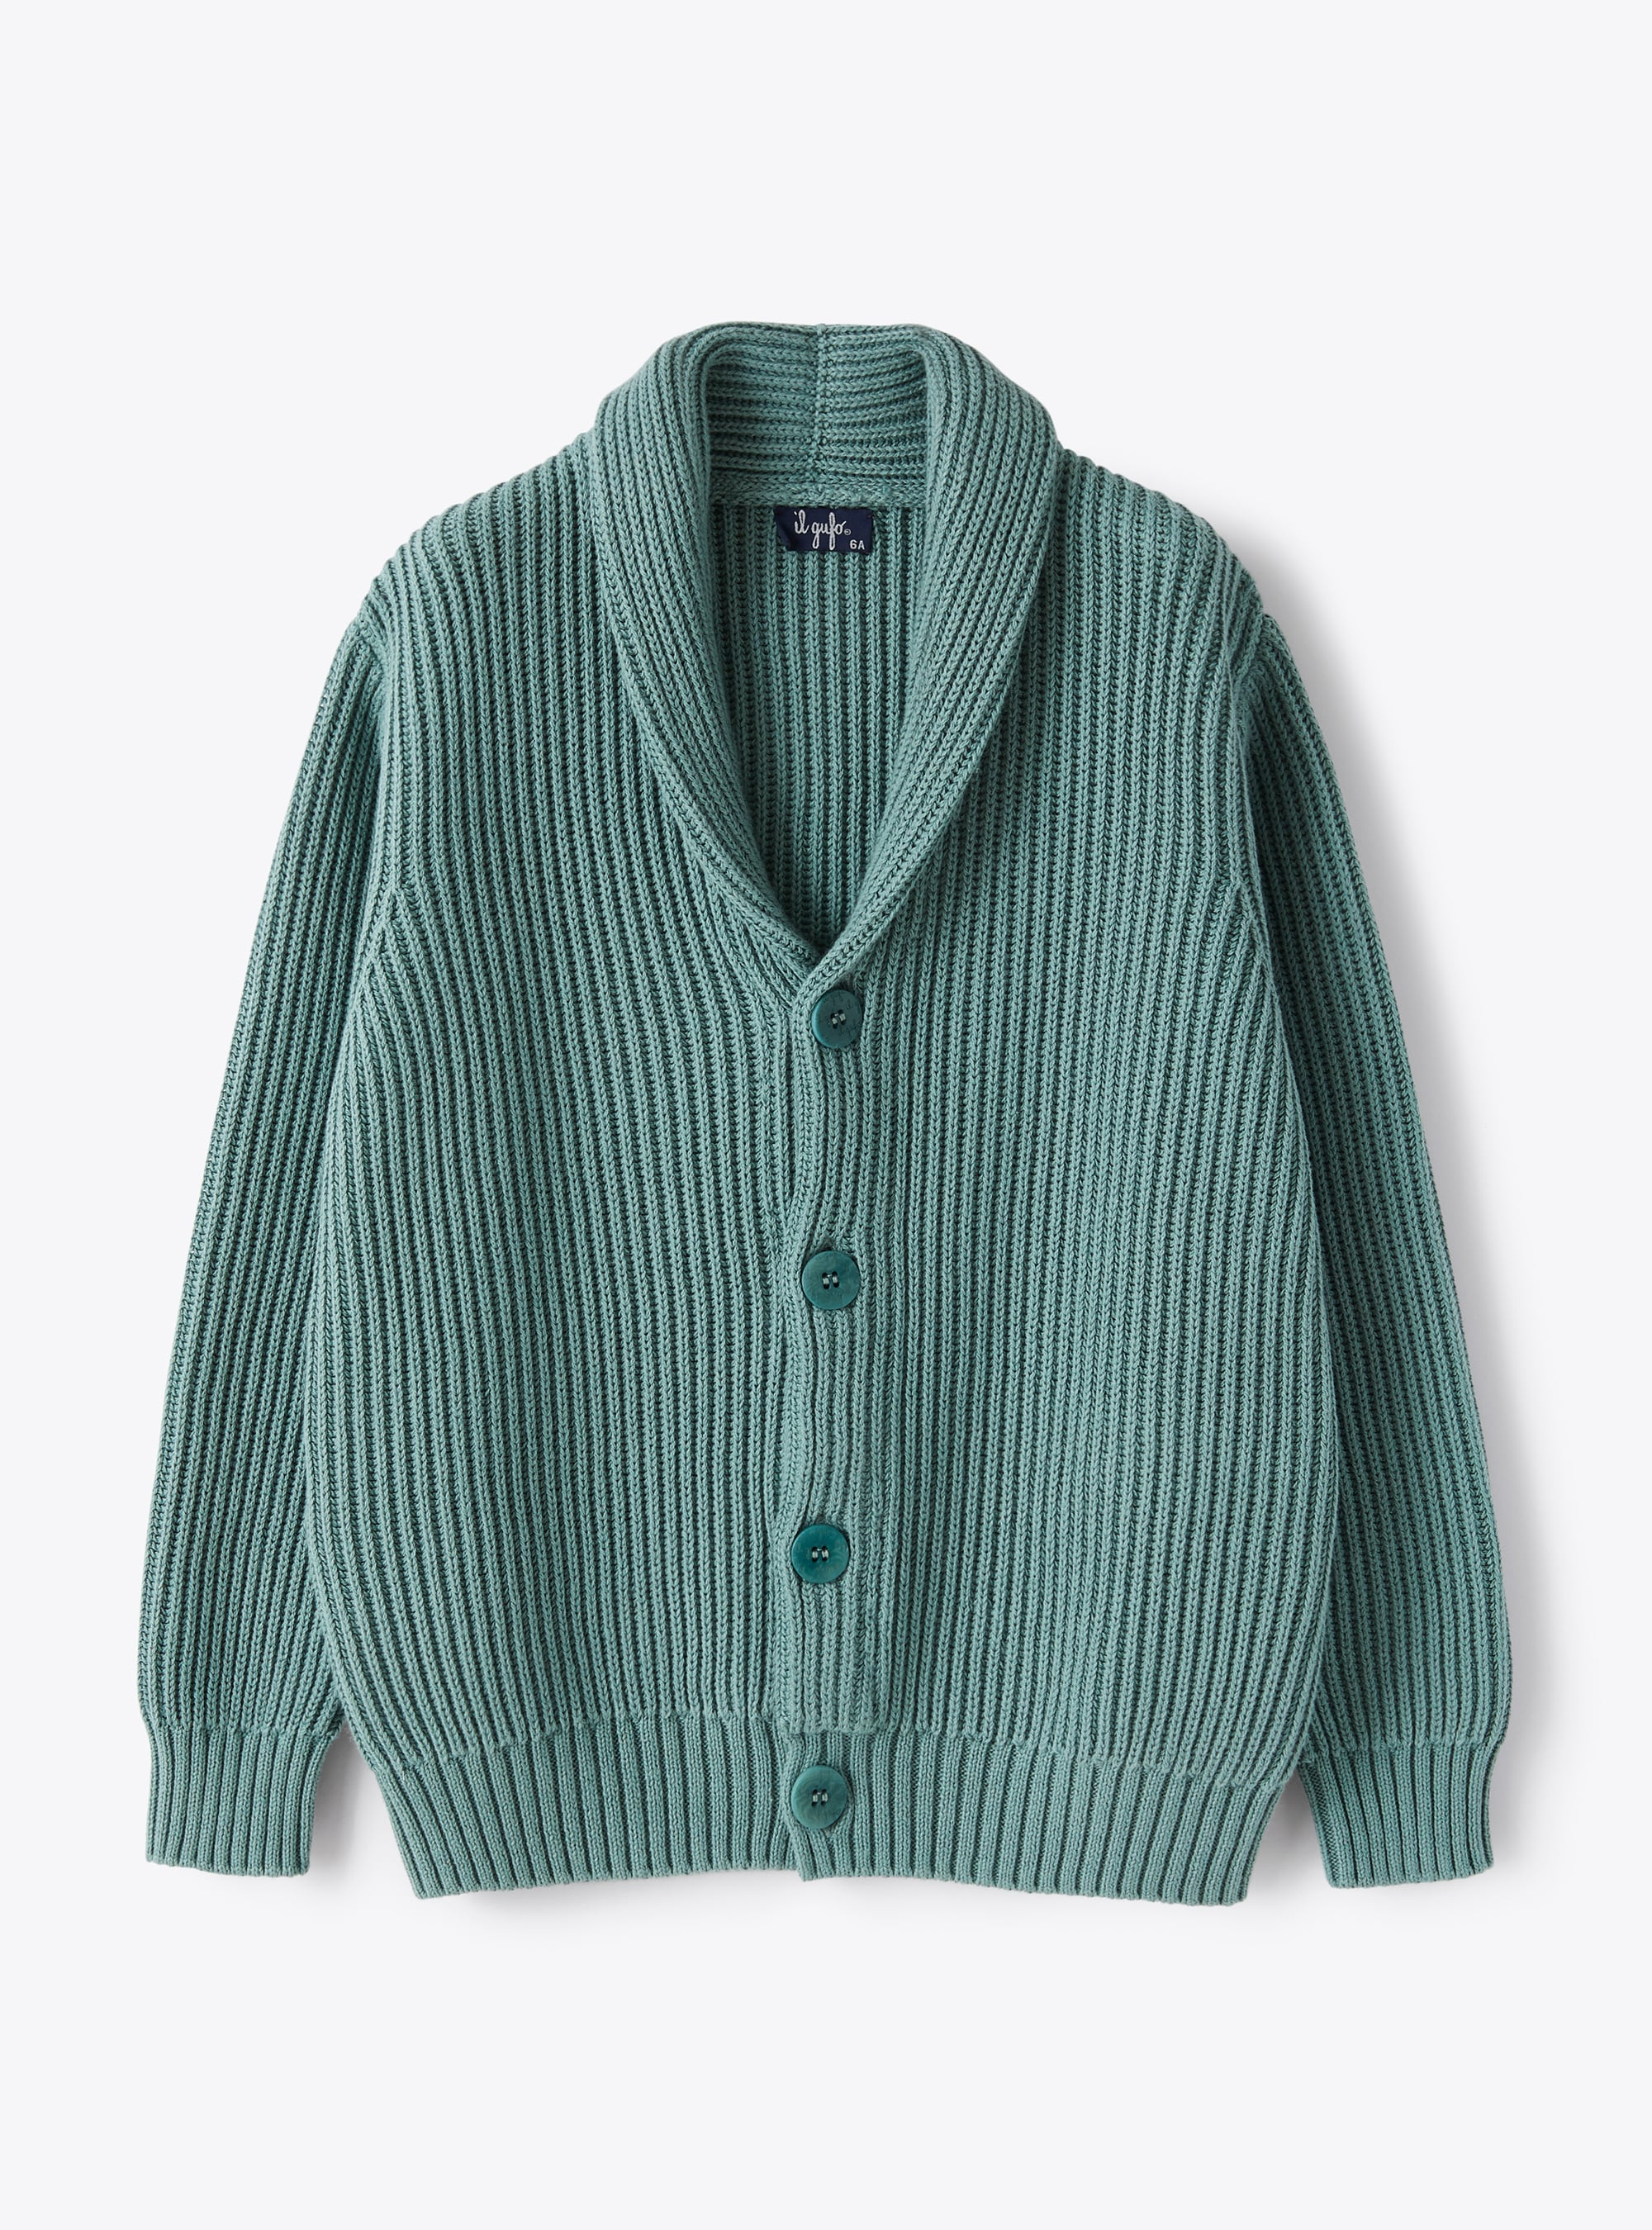 Cardigan in organic green cotton - Sweaters - Il Gufo